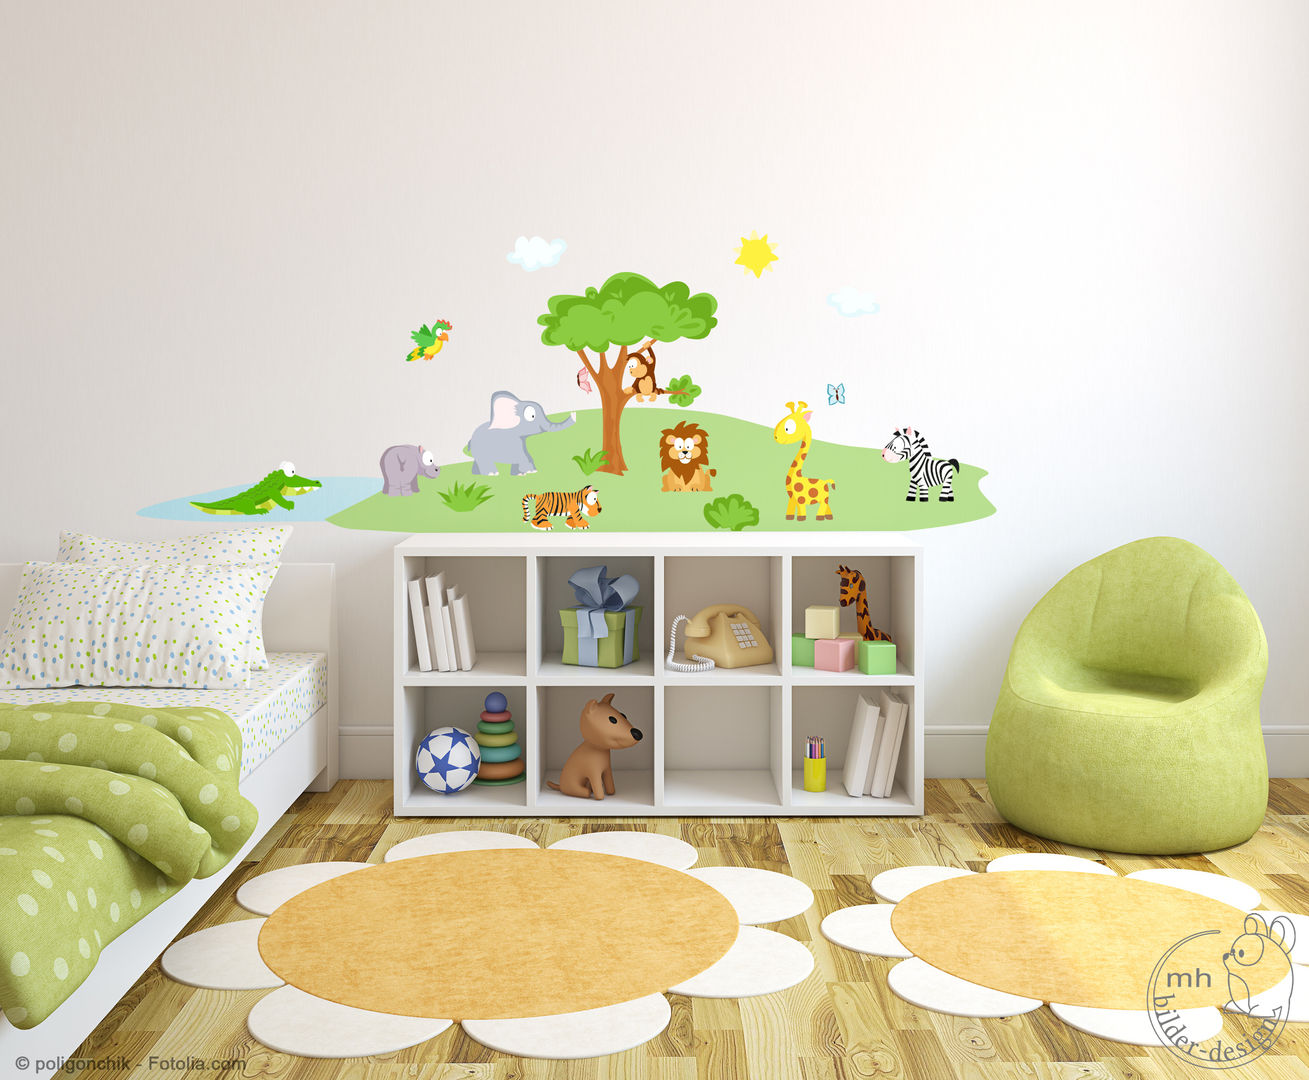 Wandtattoos - Dschungel im Kinderzimmer, MHBilder-Design MHBilder-Design Nursery/kid’s room مصنوعی Brown Accessories & decoration